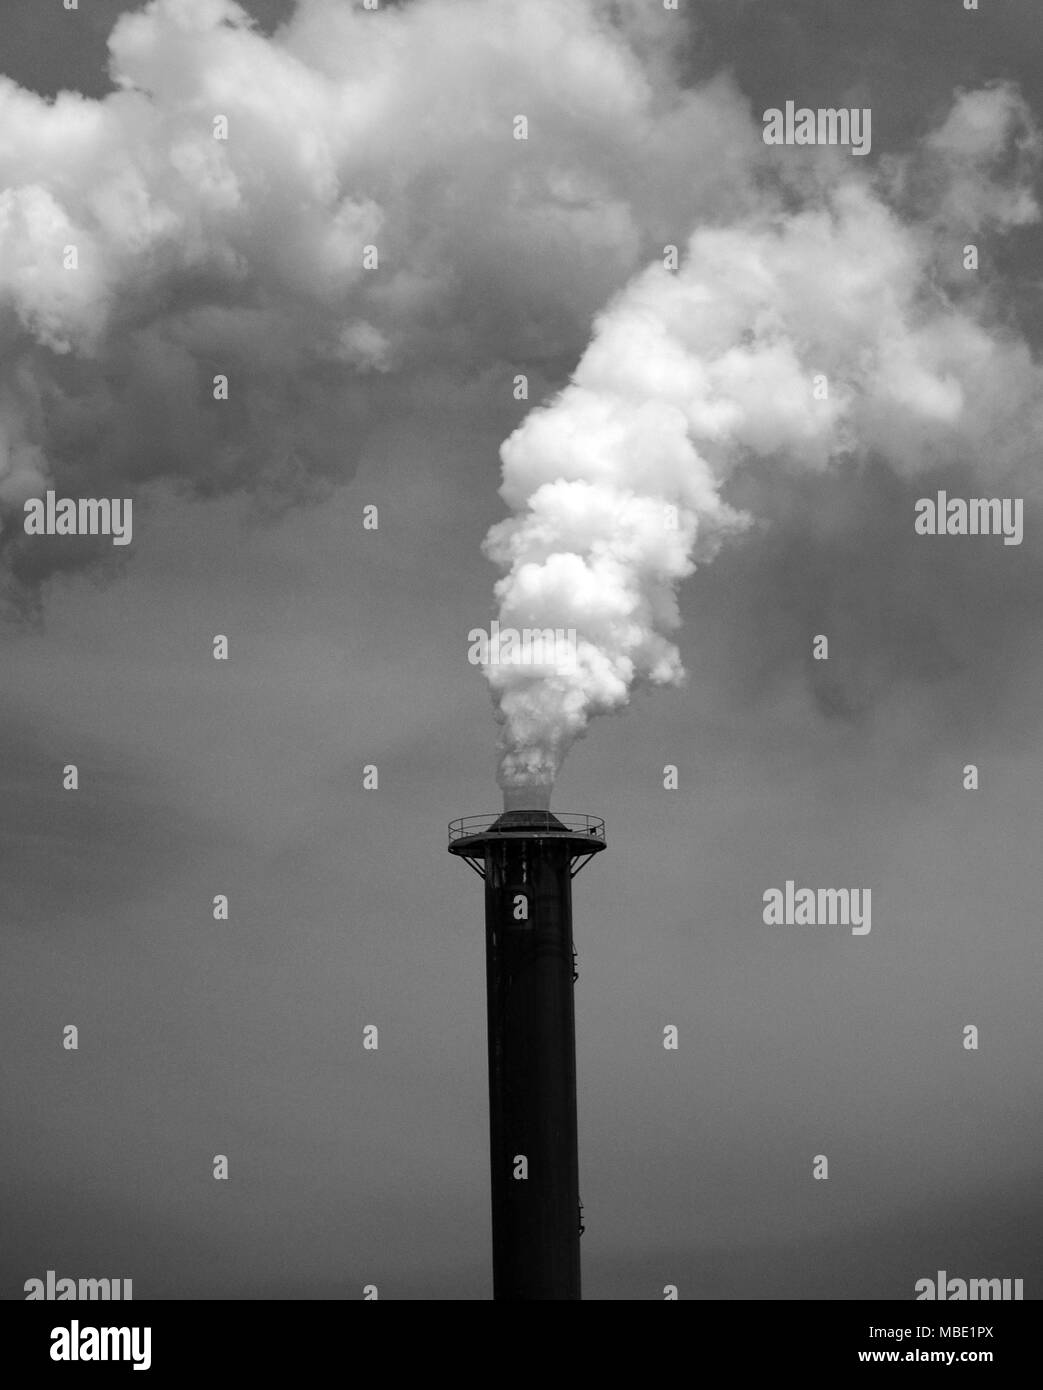 La pollution industrielle, l'émission de produits chimiques toxiques dans l'atmosphère Banque D'Images